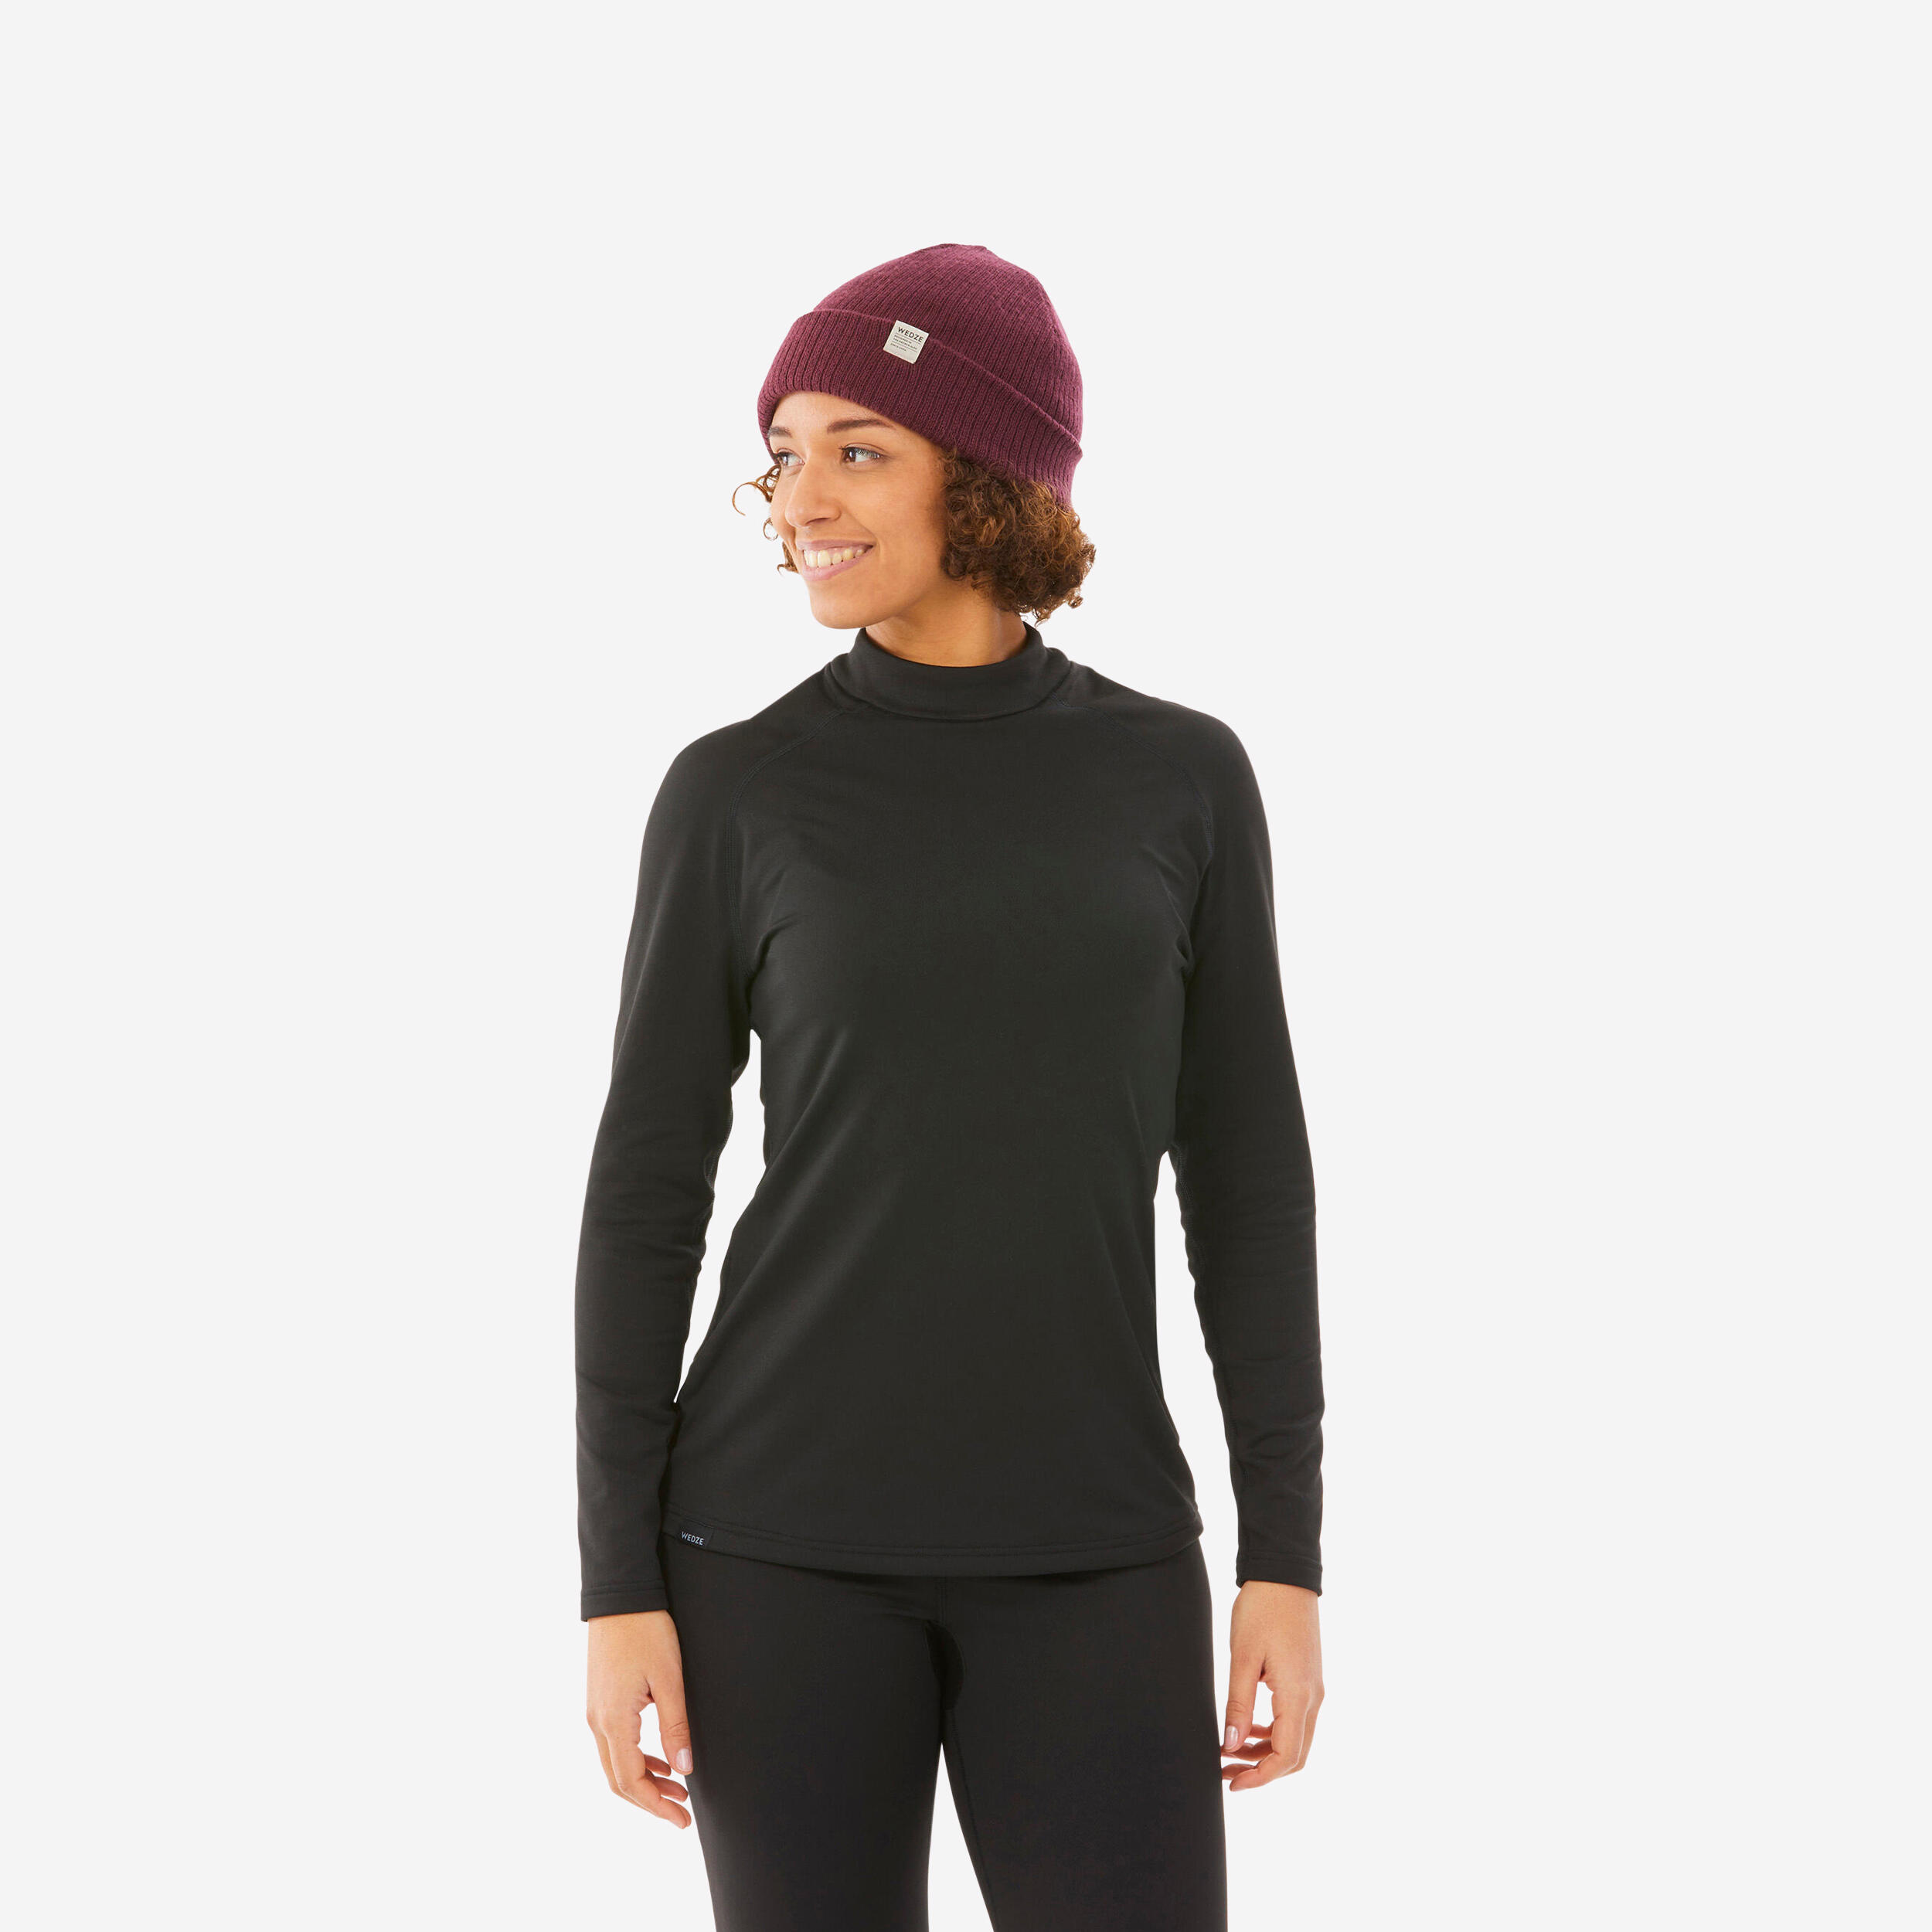 Women's 900 Merino wool seamless thermal base layer ski top - grey/pink  WEDZE